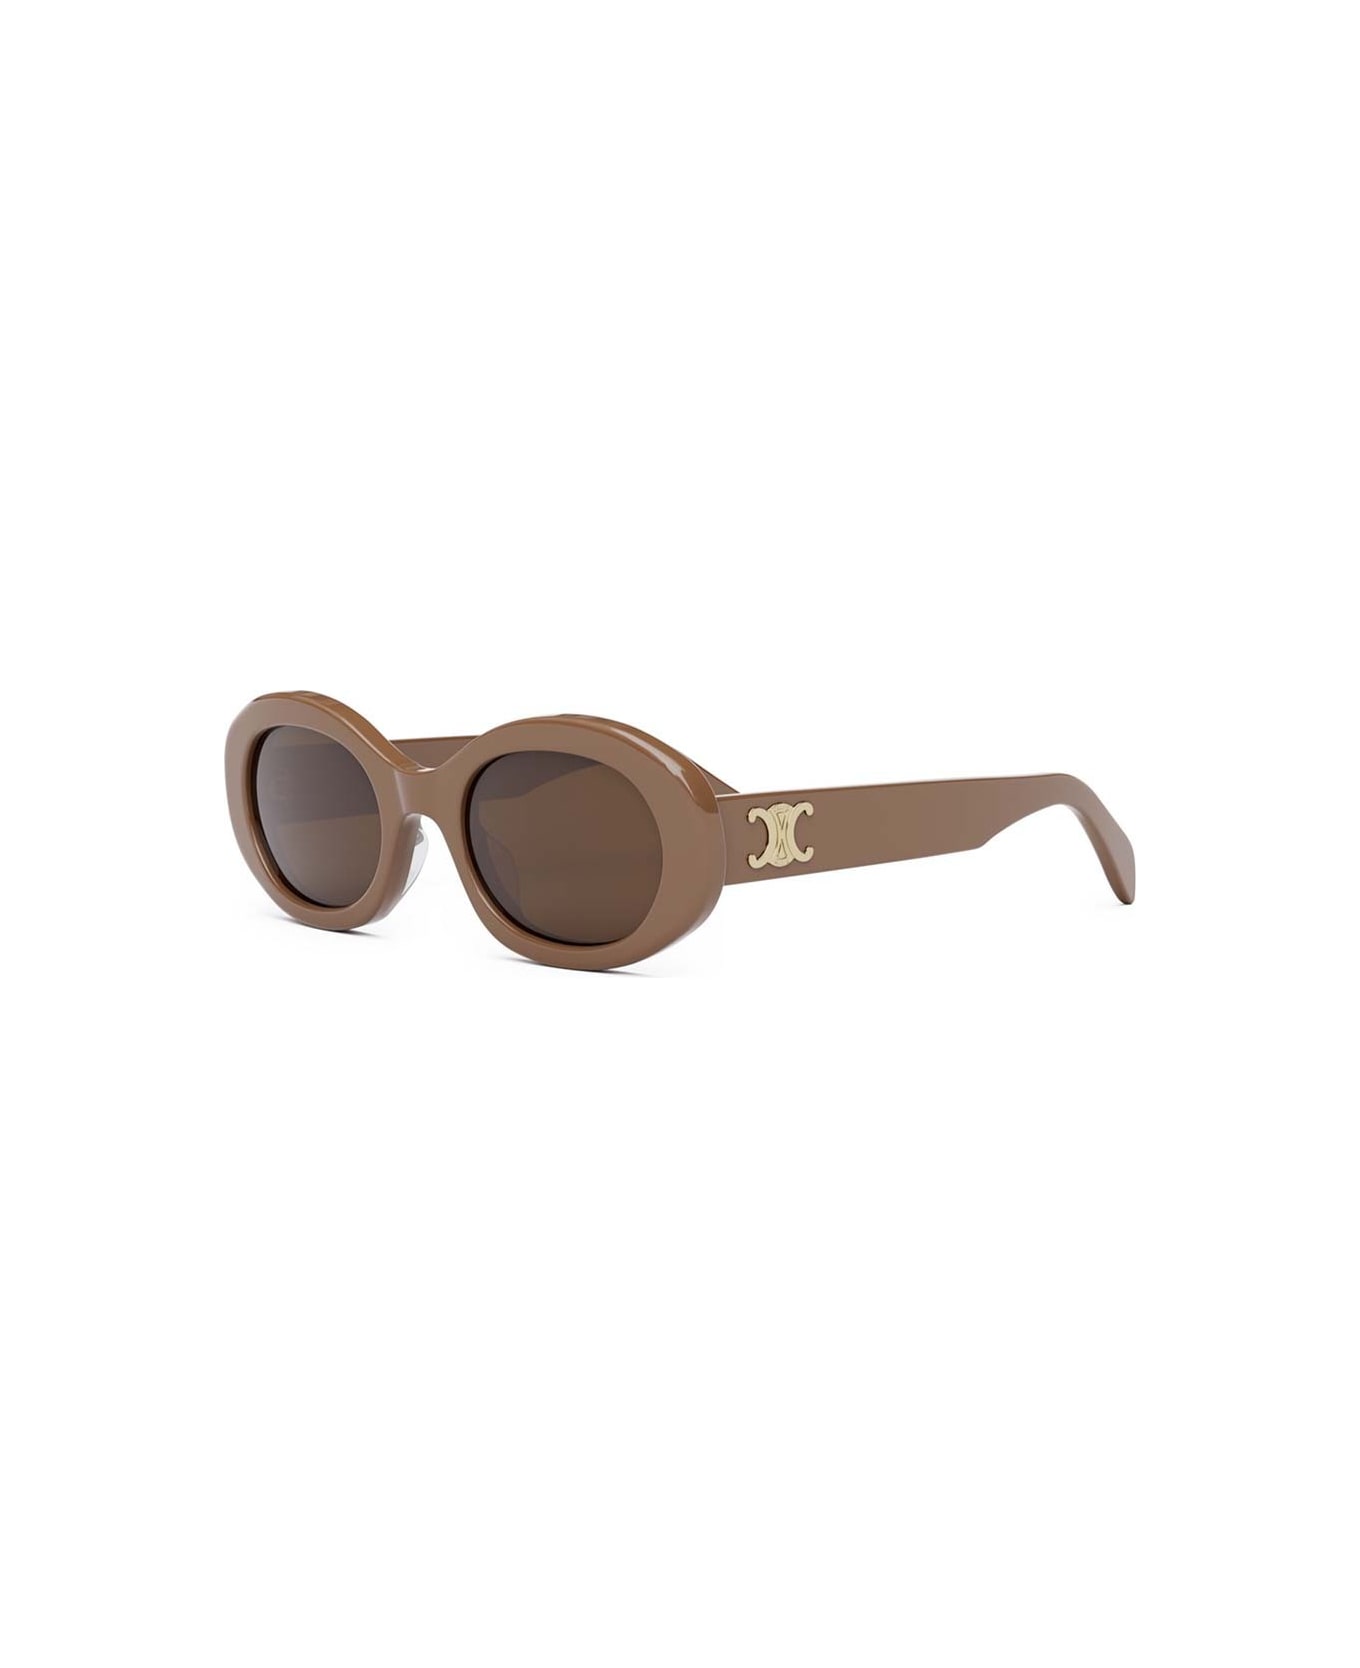 Celine Sunglasses - Caramello/Marrone